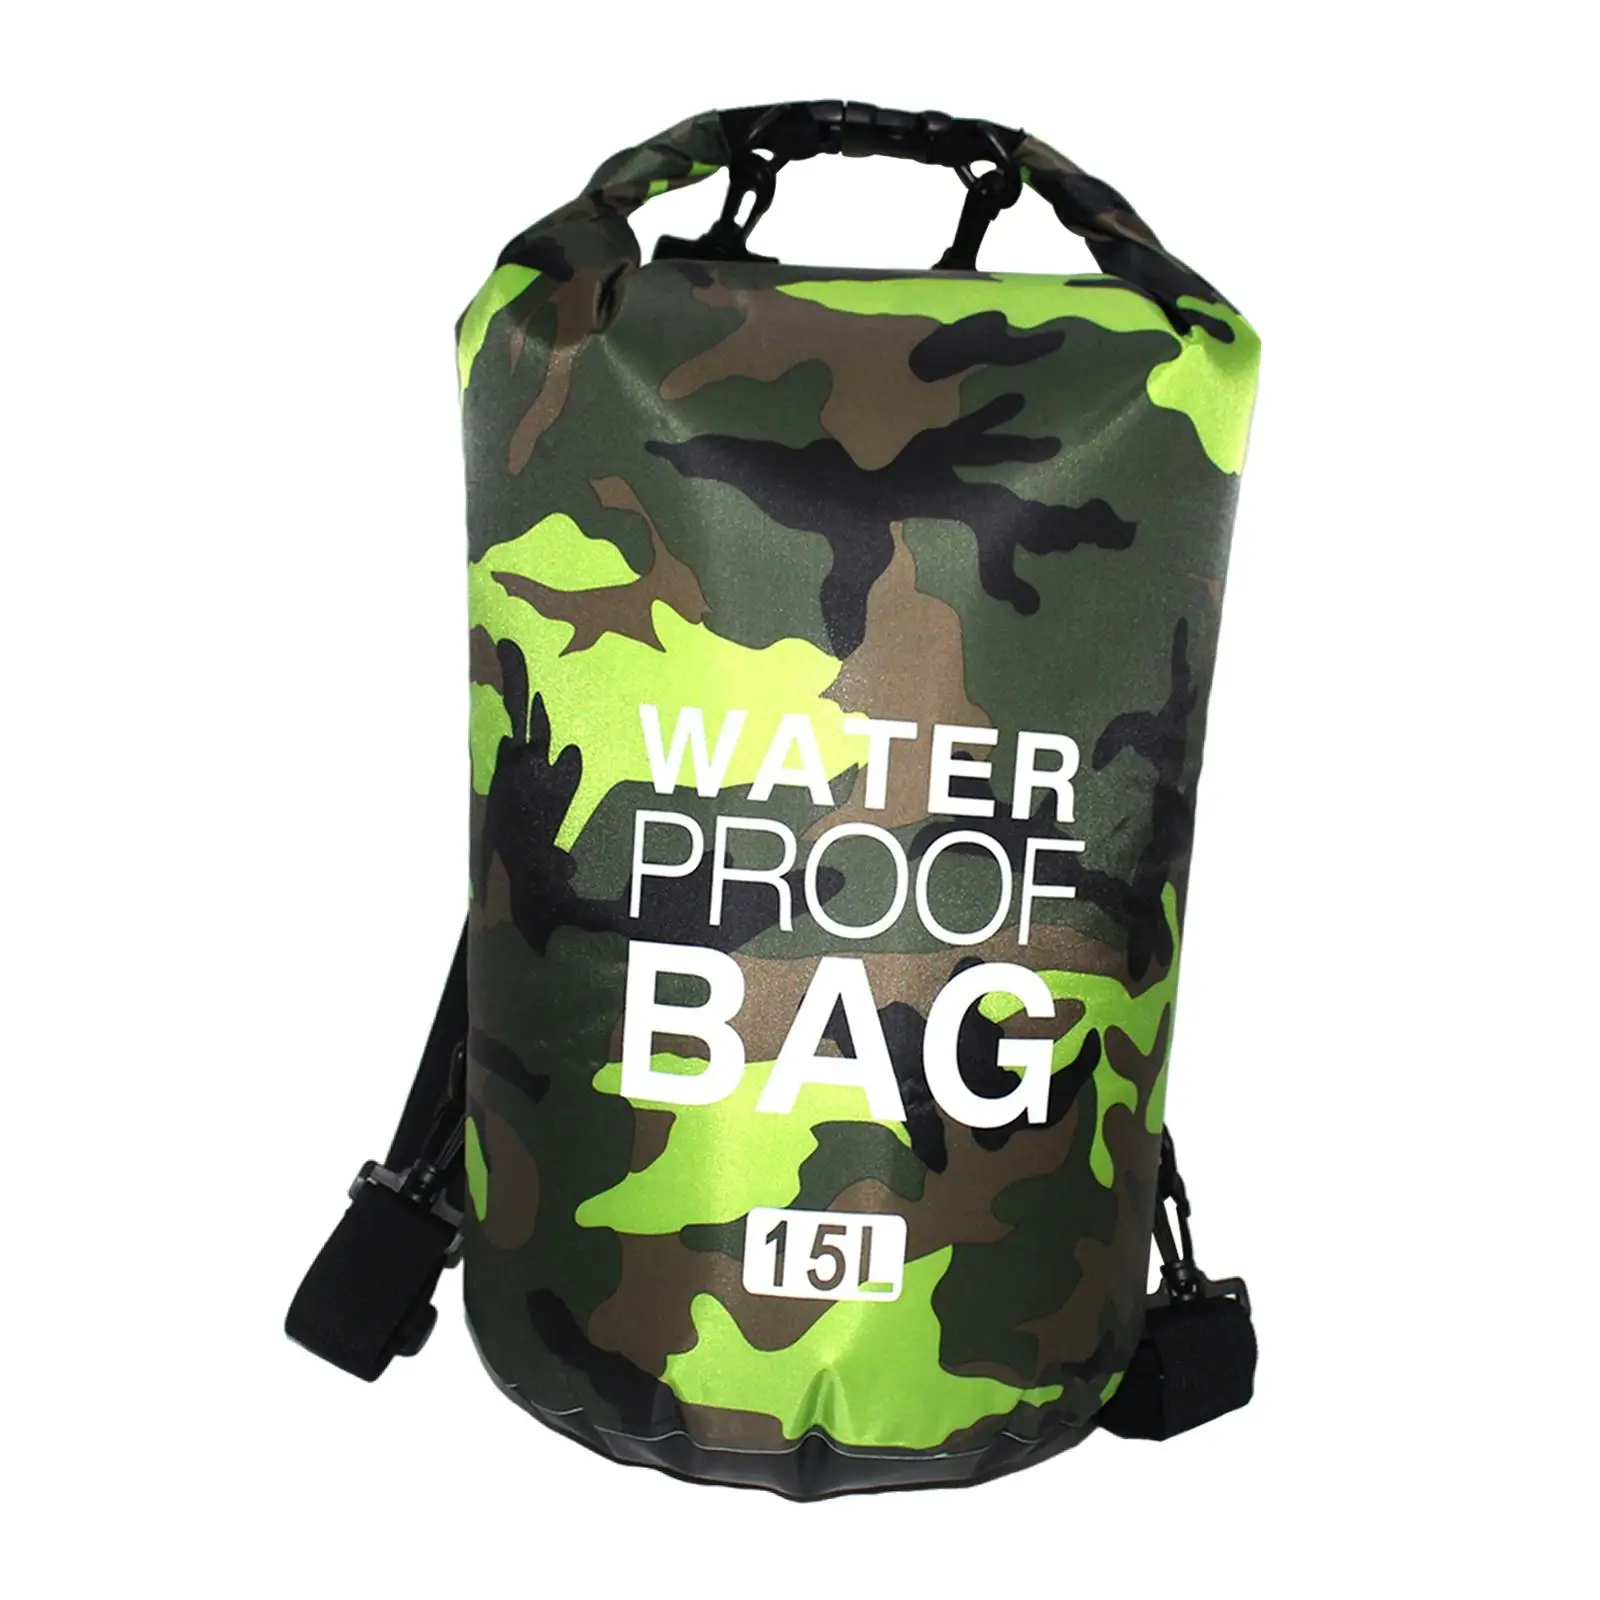 Waterproof Backpack Heavy Duty Storage Sack Dry Bag for Hiking Phone Kayak